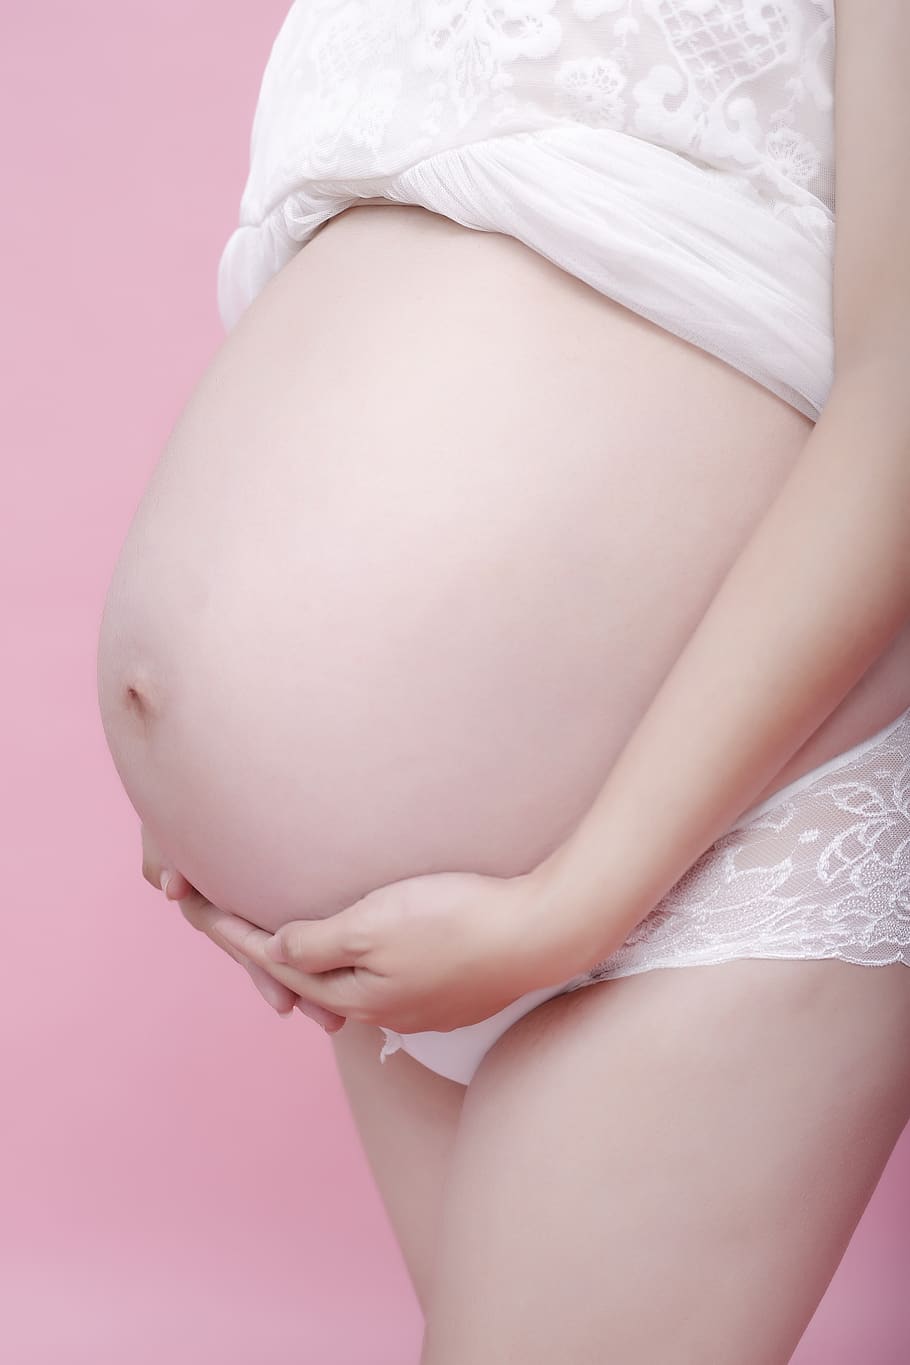 mujeres embarazadas, mujer, vientre, embarazada, parte del cuerpo humano, comienzos, sección media, parte del cuerpo, foto de estudio, abdomen humano